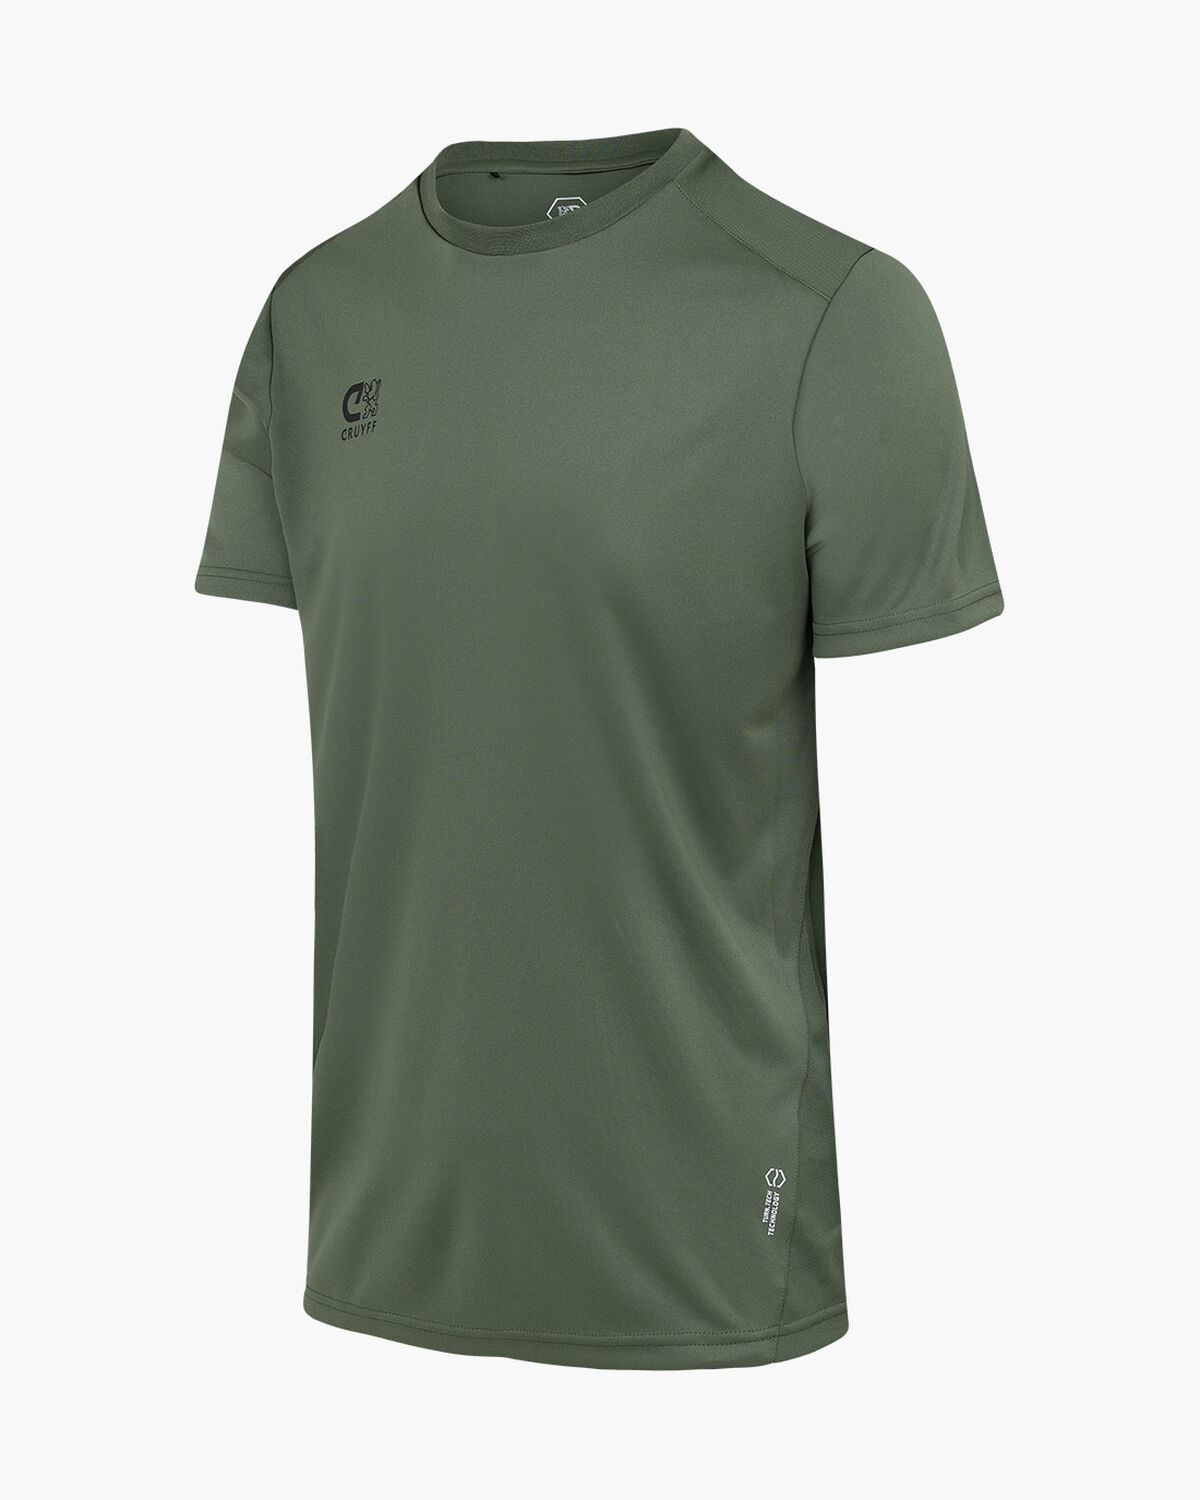 Cruyff Training Shirt Junior, Dark green, hi-res